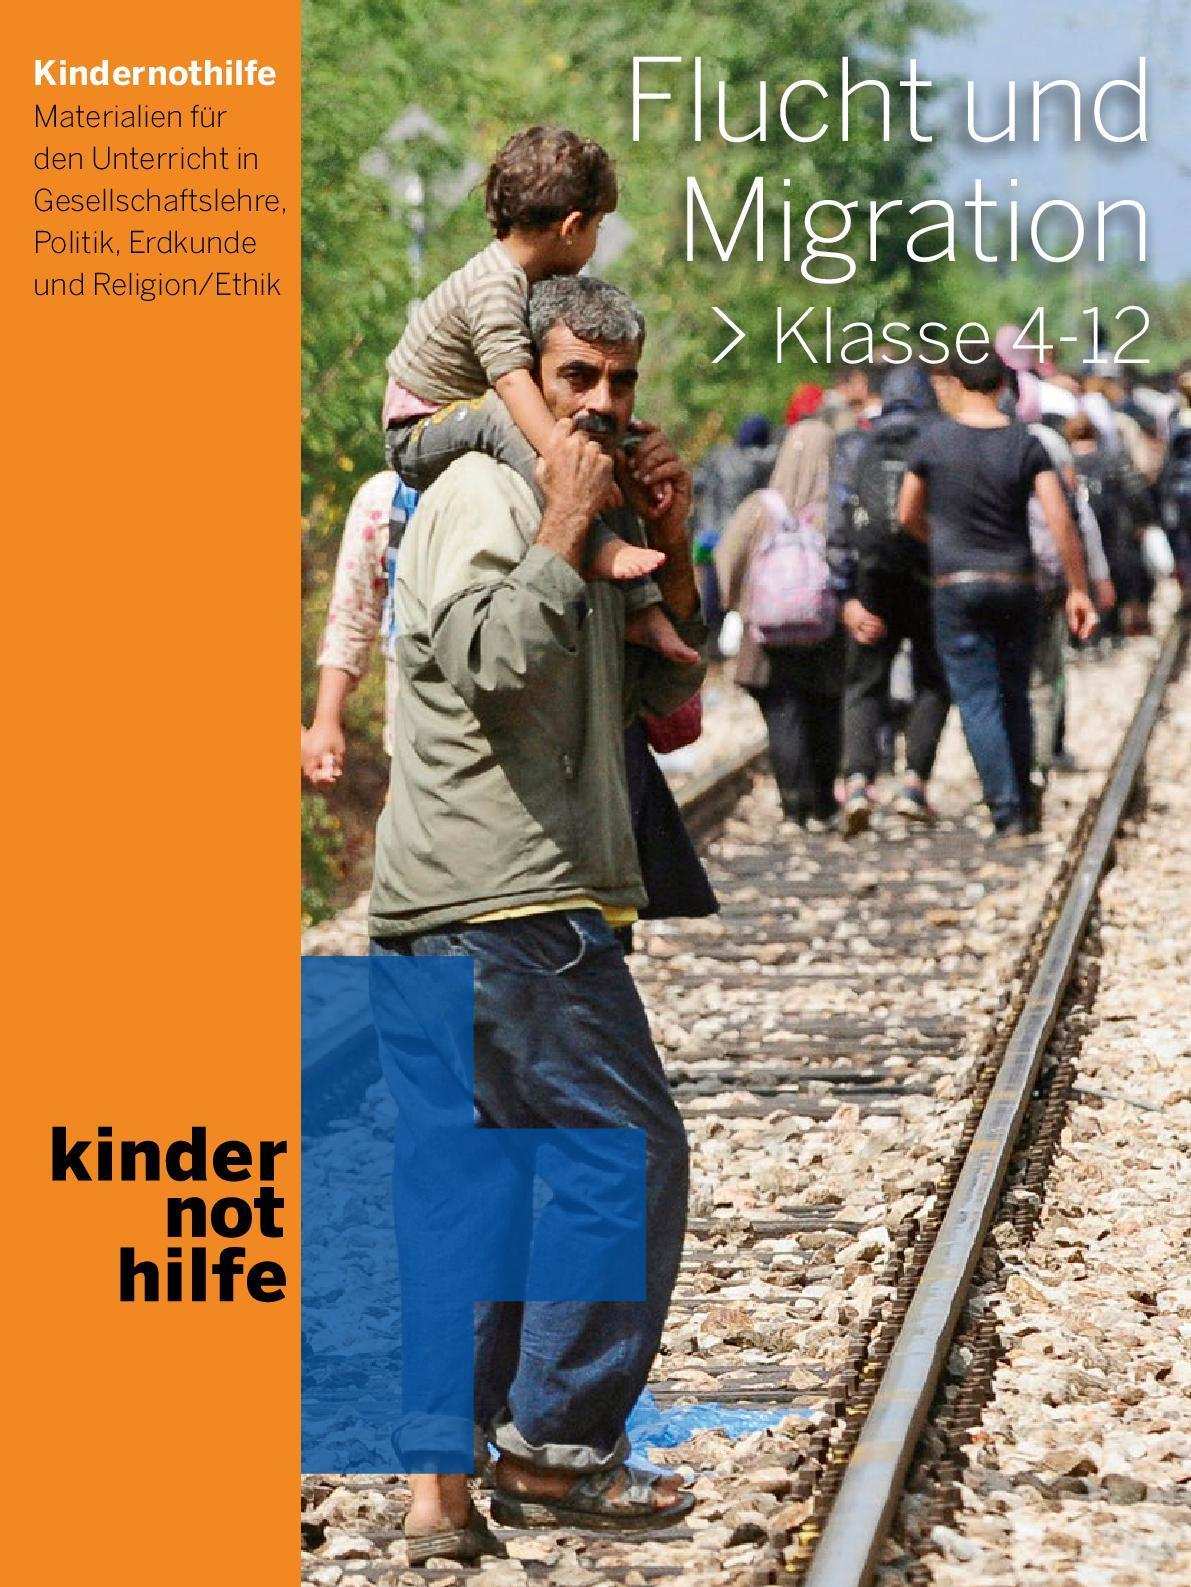 Titelbild Unterrichtsmaterial Flucht und Migration (Quelle: Kindernothilfe)